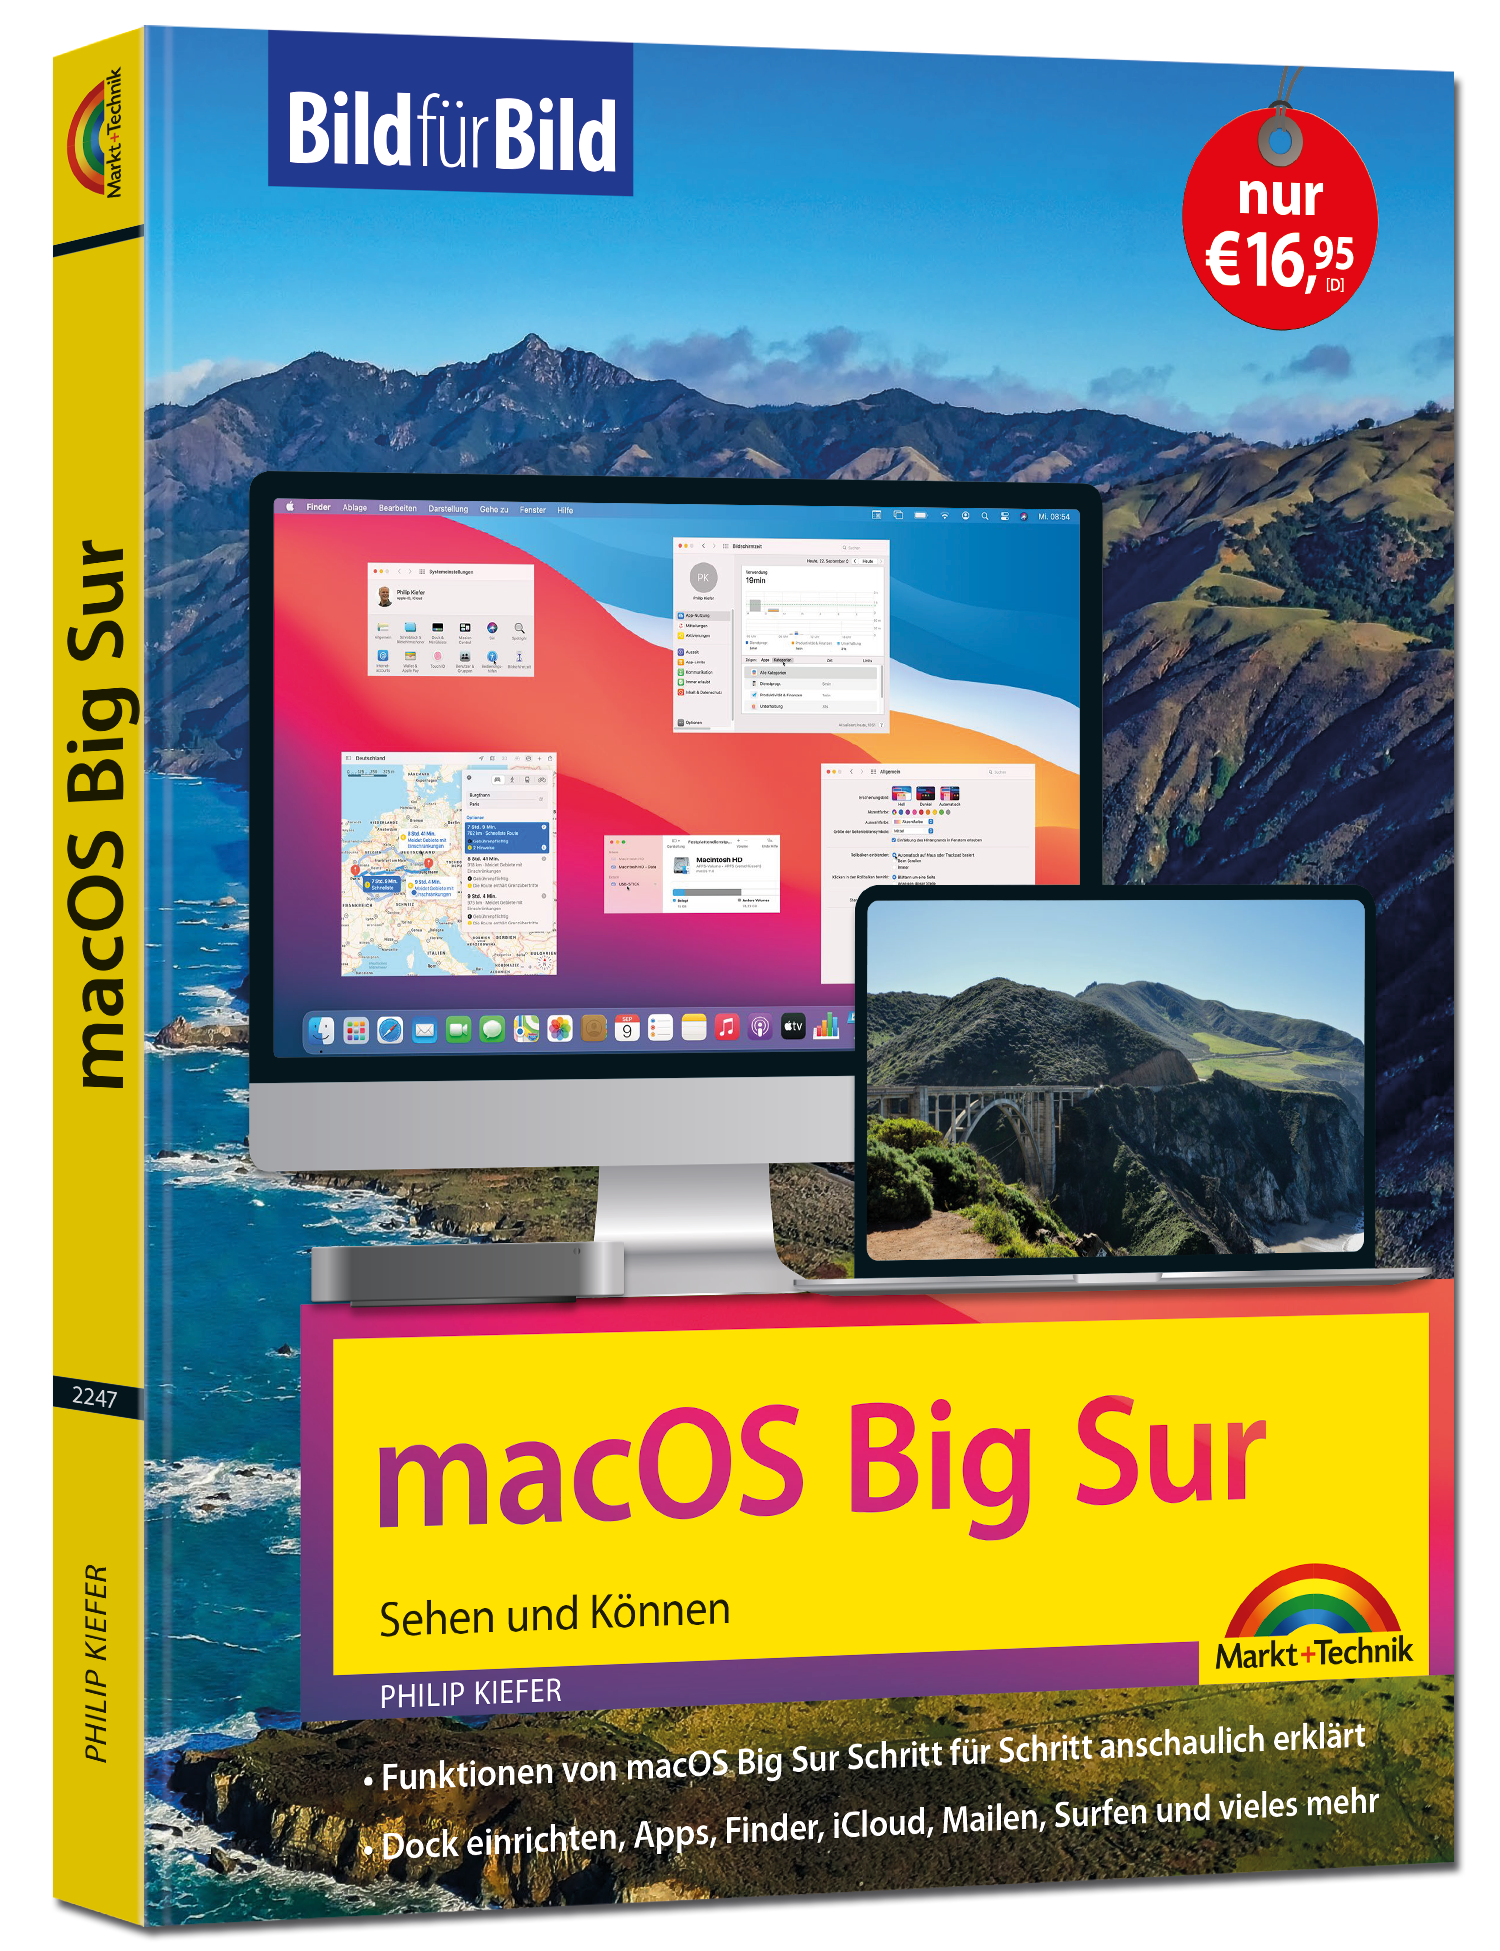 macOS Big Sur - Bild für Bild